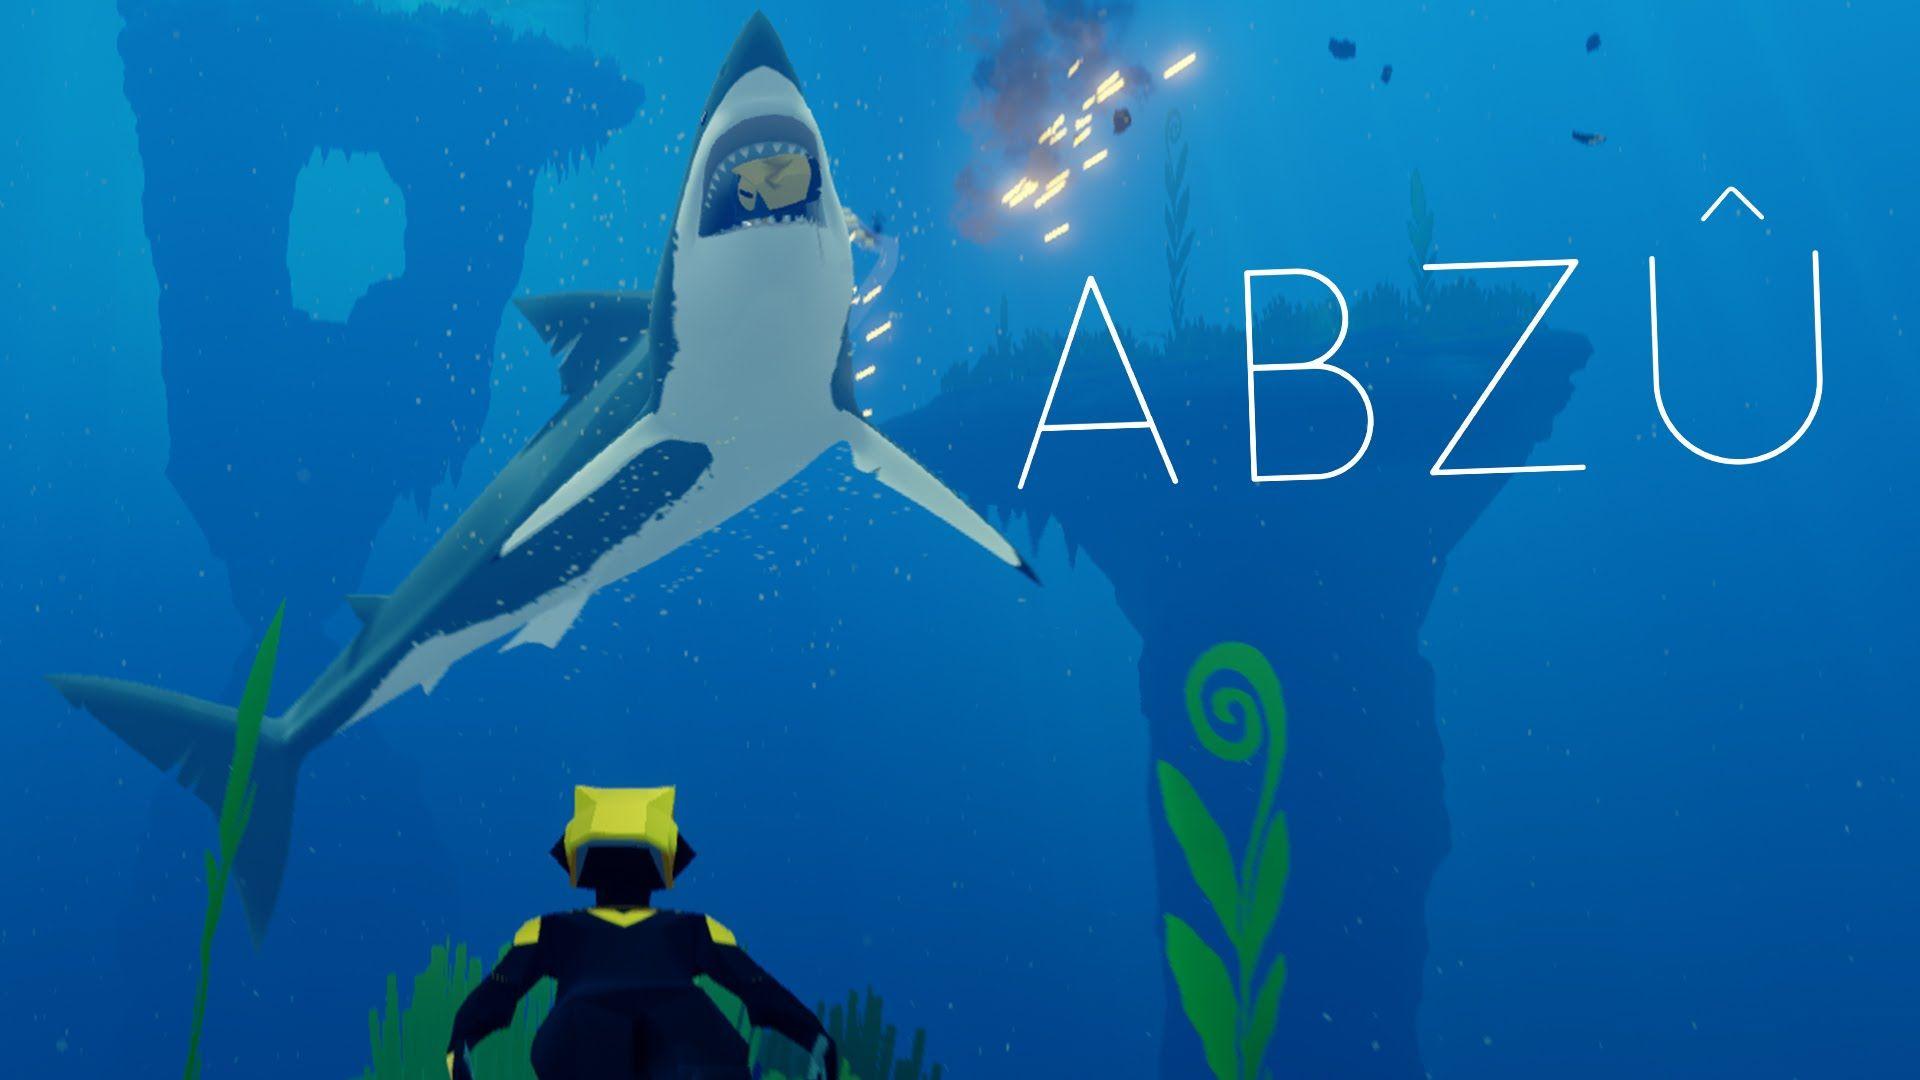 ABZU Gameplay Part 1 The Deep Ocean! Meets